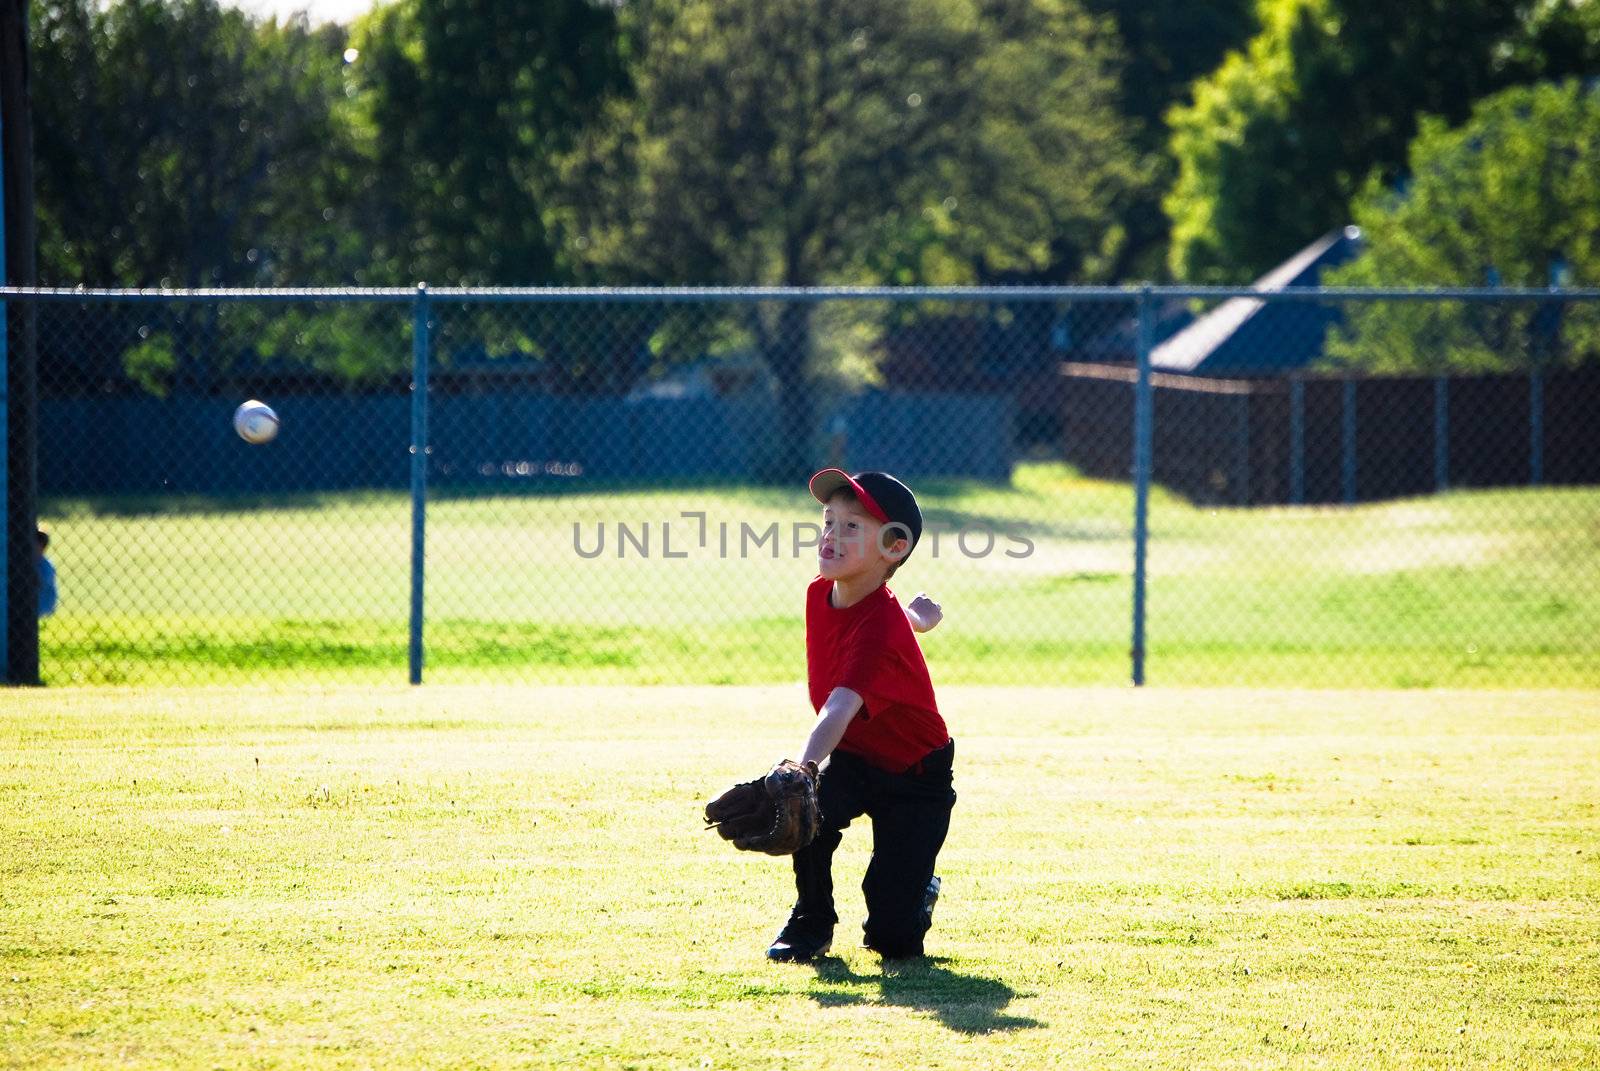 Little league baseball player diving for ball.